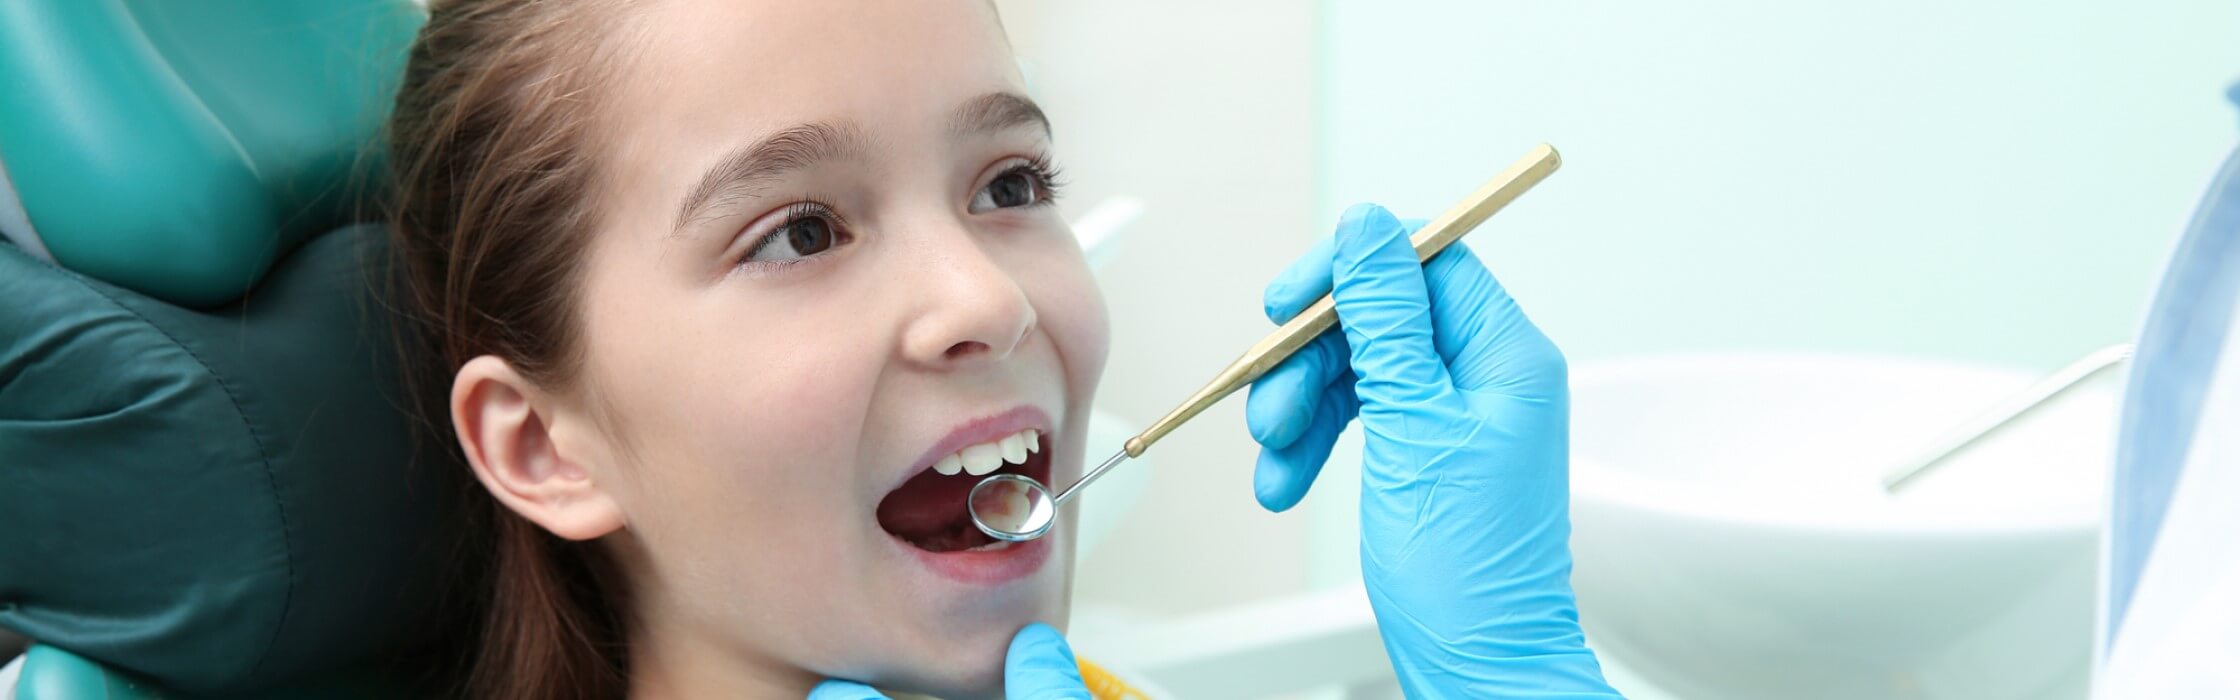 Zahnversiegelung: Kosten, Vor- und Nachteile der Behandlung